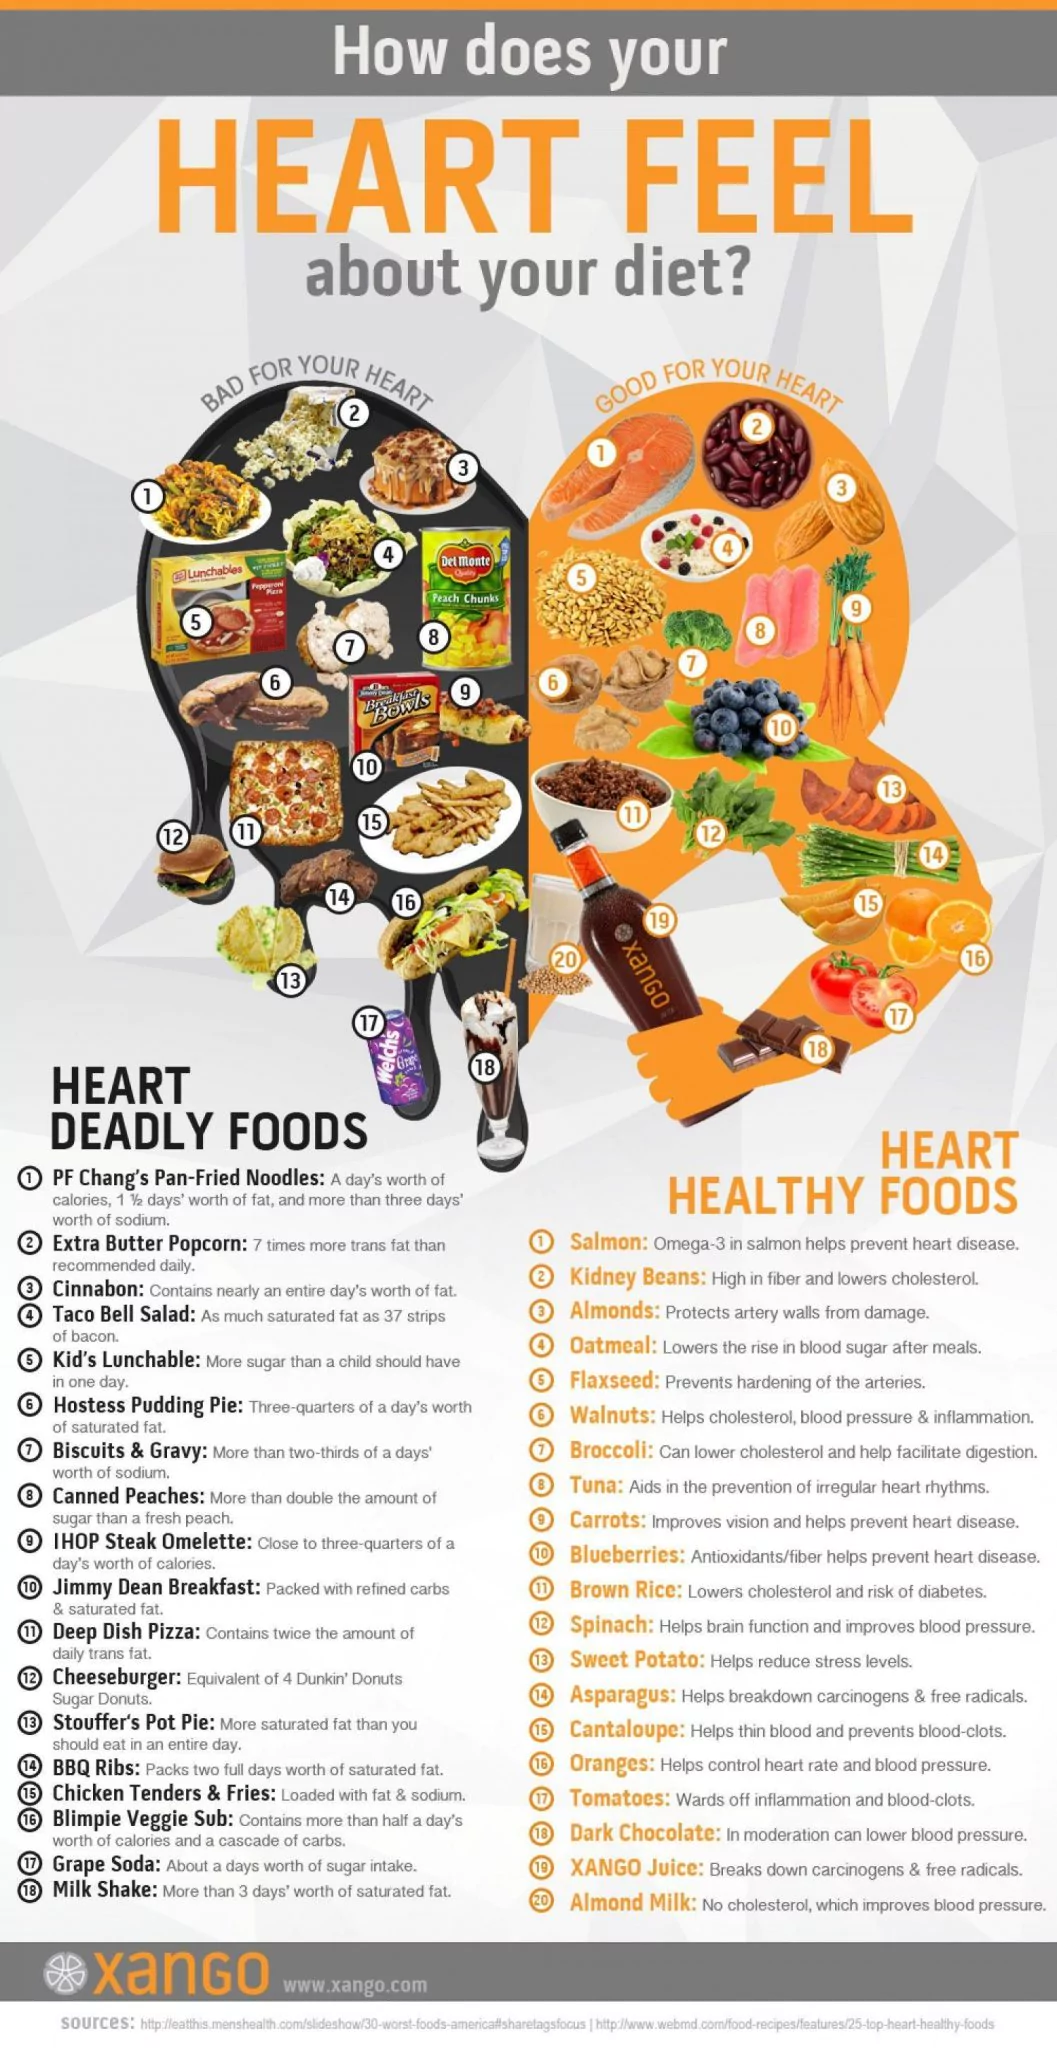 american-heart-month-healthy-recipe-cardenas-internal-medicine